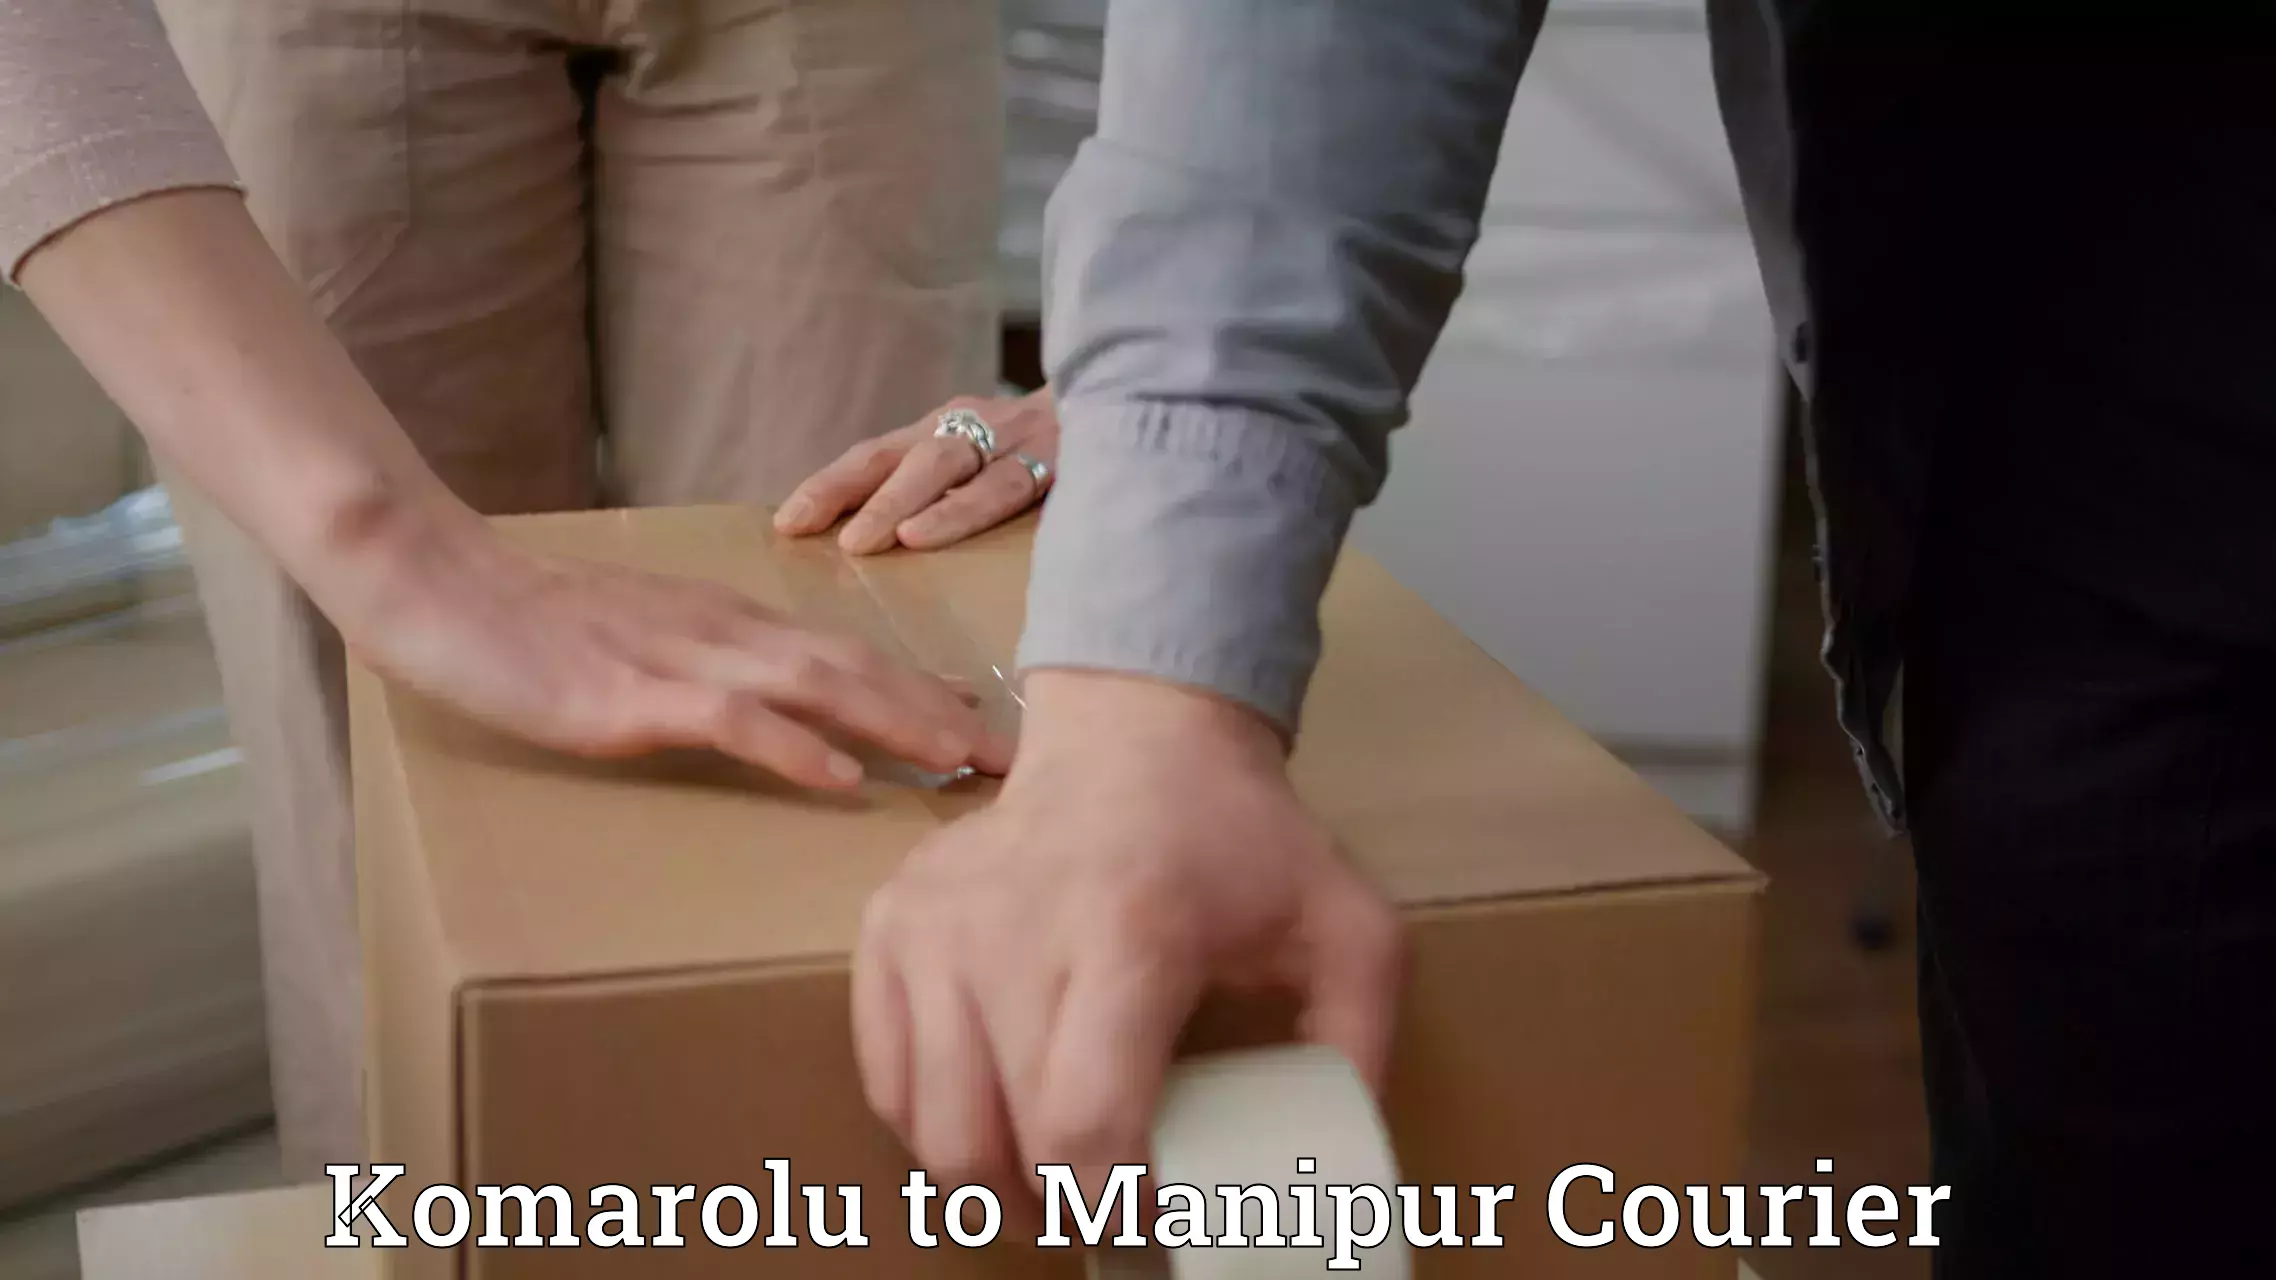 Professional courier services in Komarolu to Churachandpur